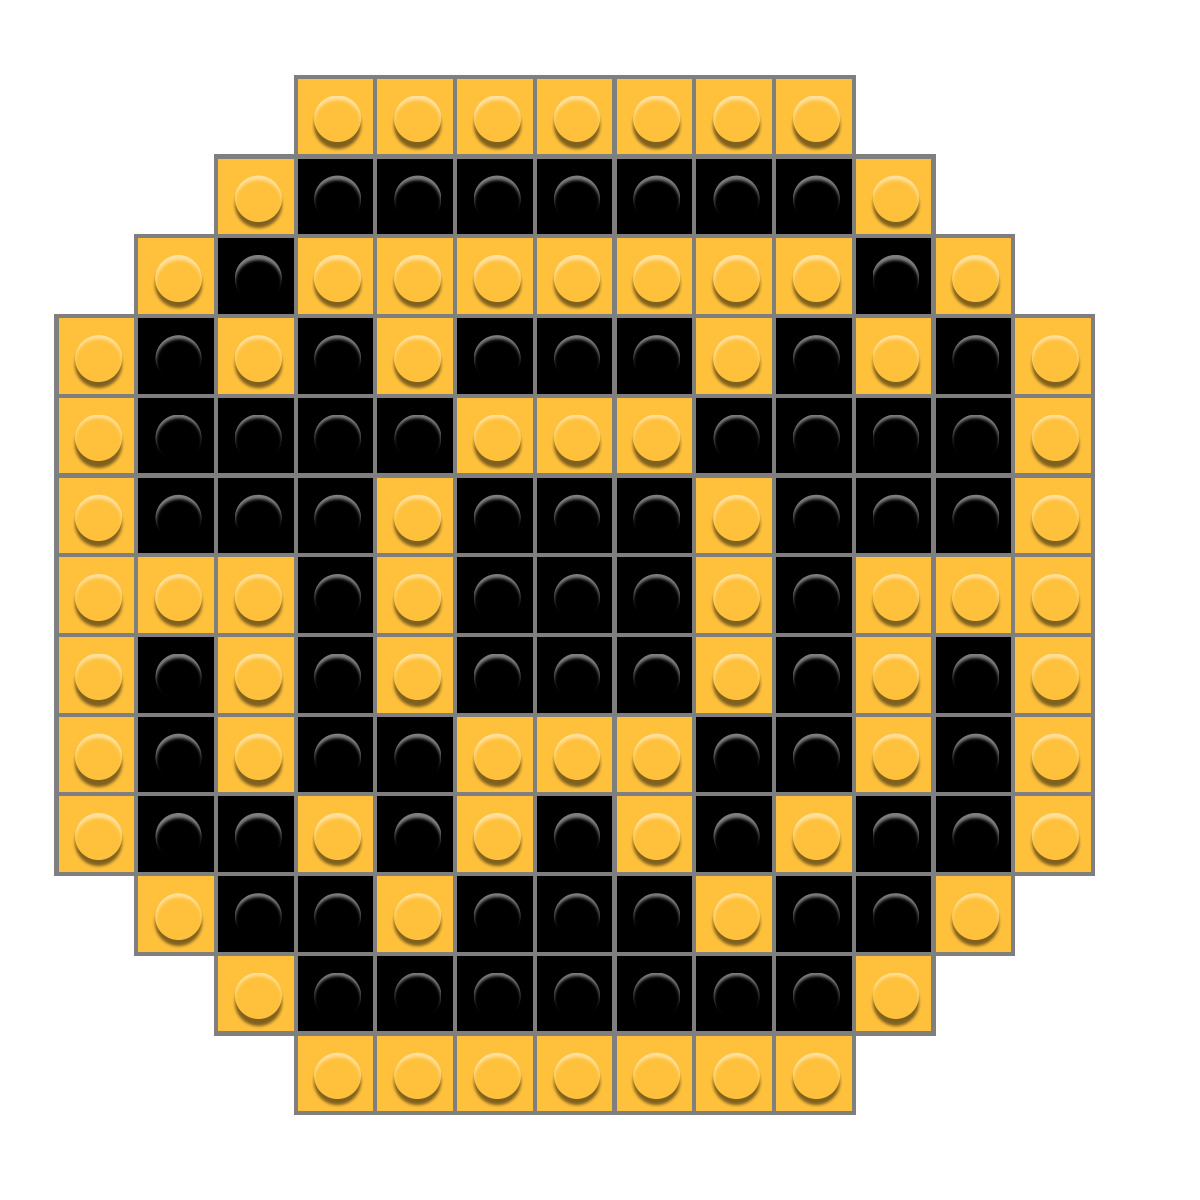 yellow lantern logo